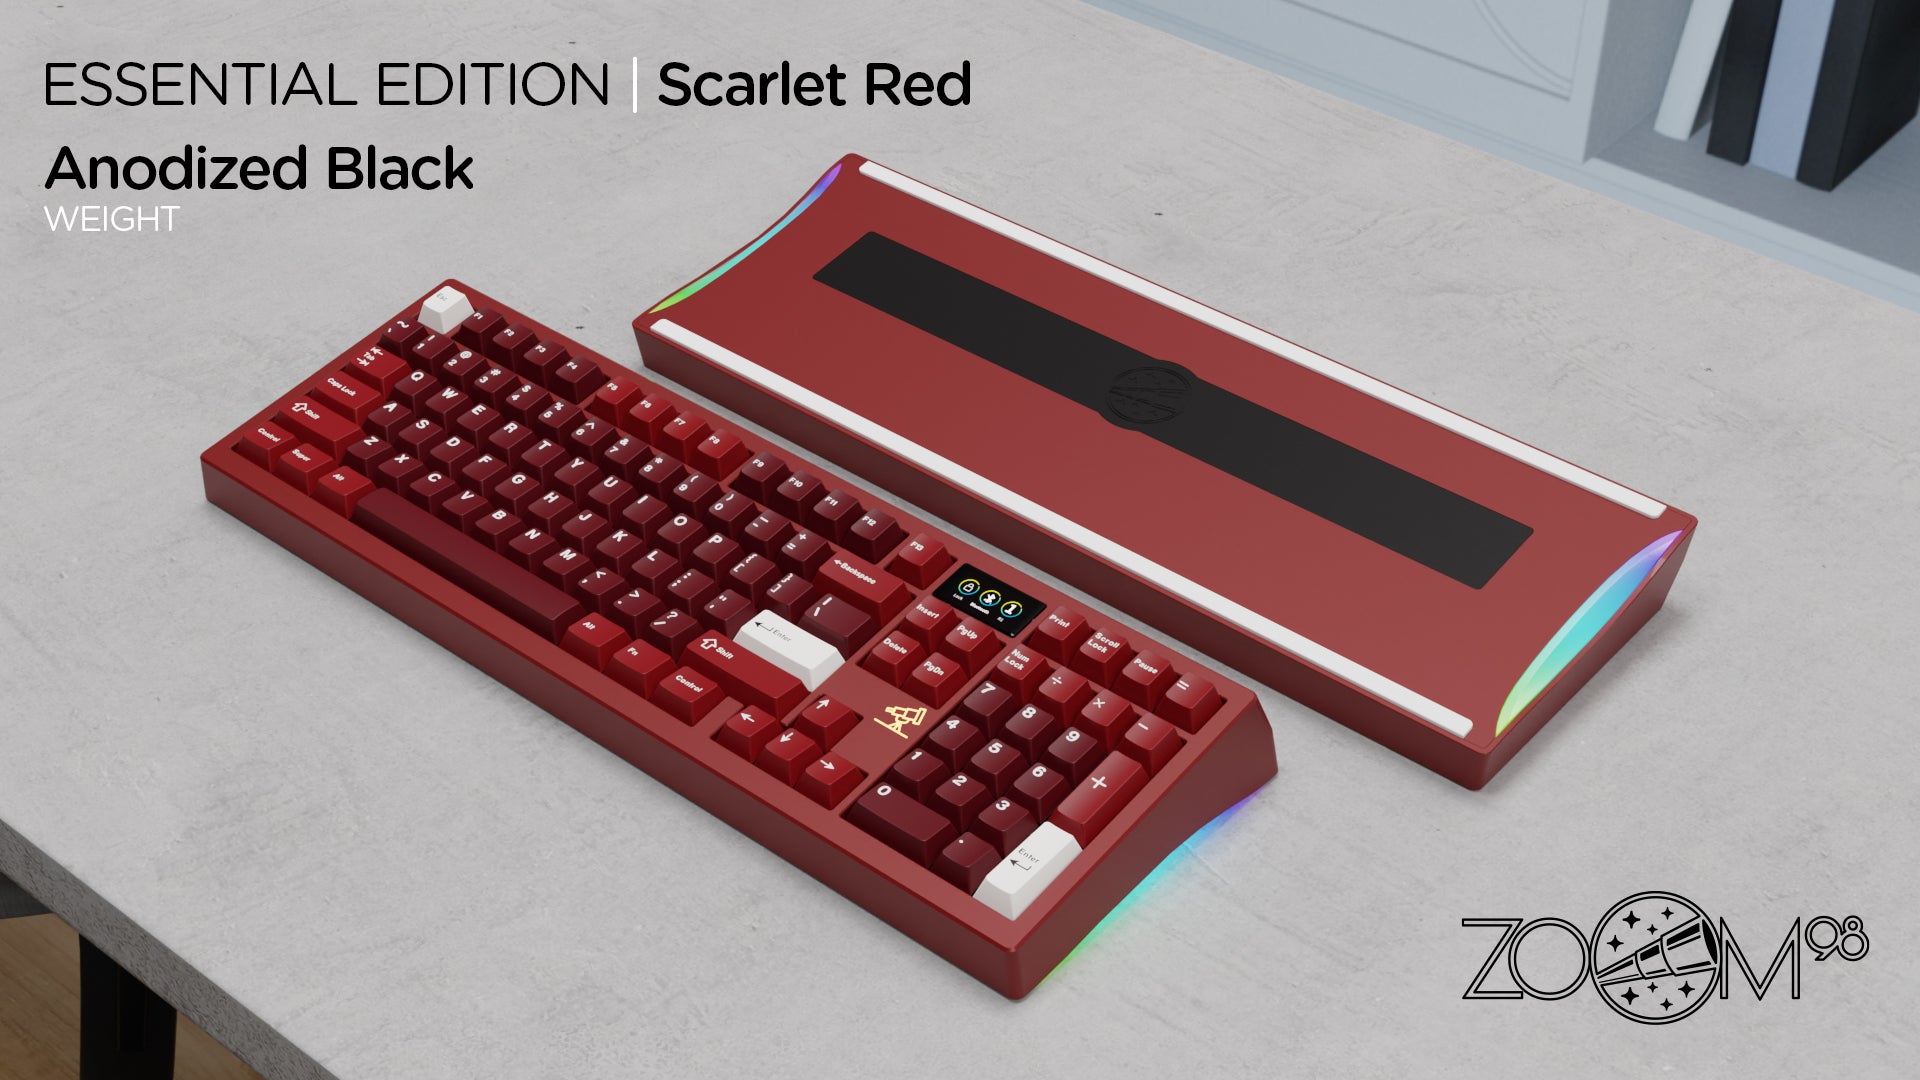 Zoom98 EE Scarlet Red